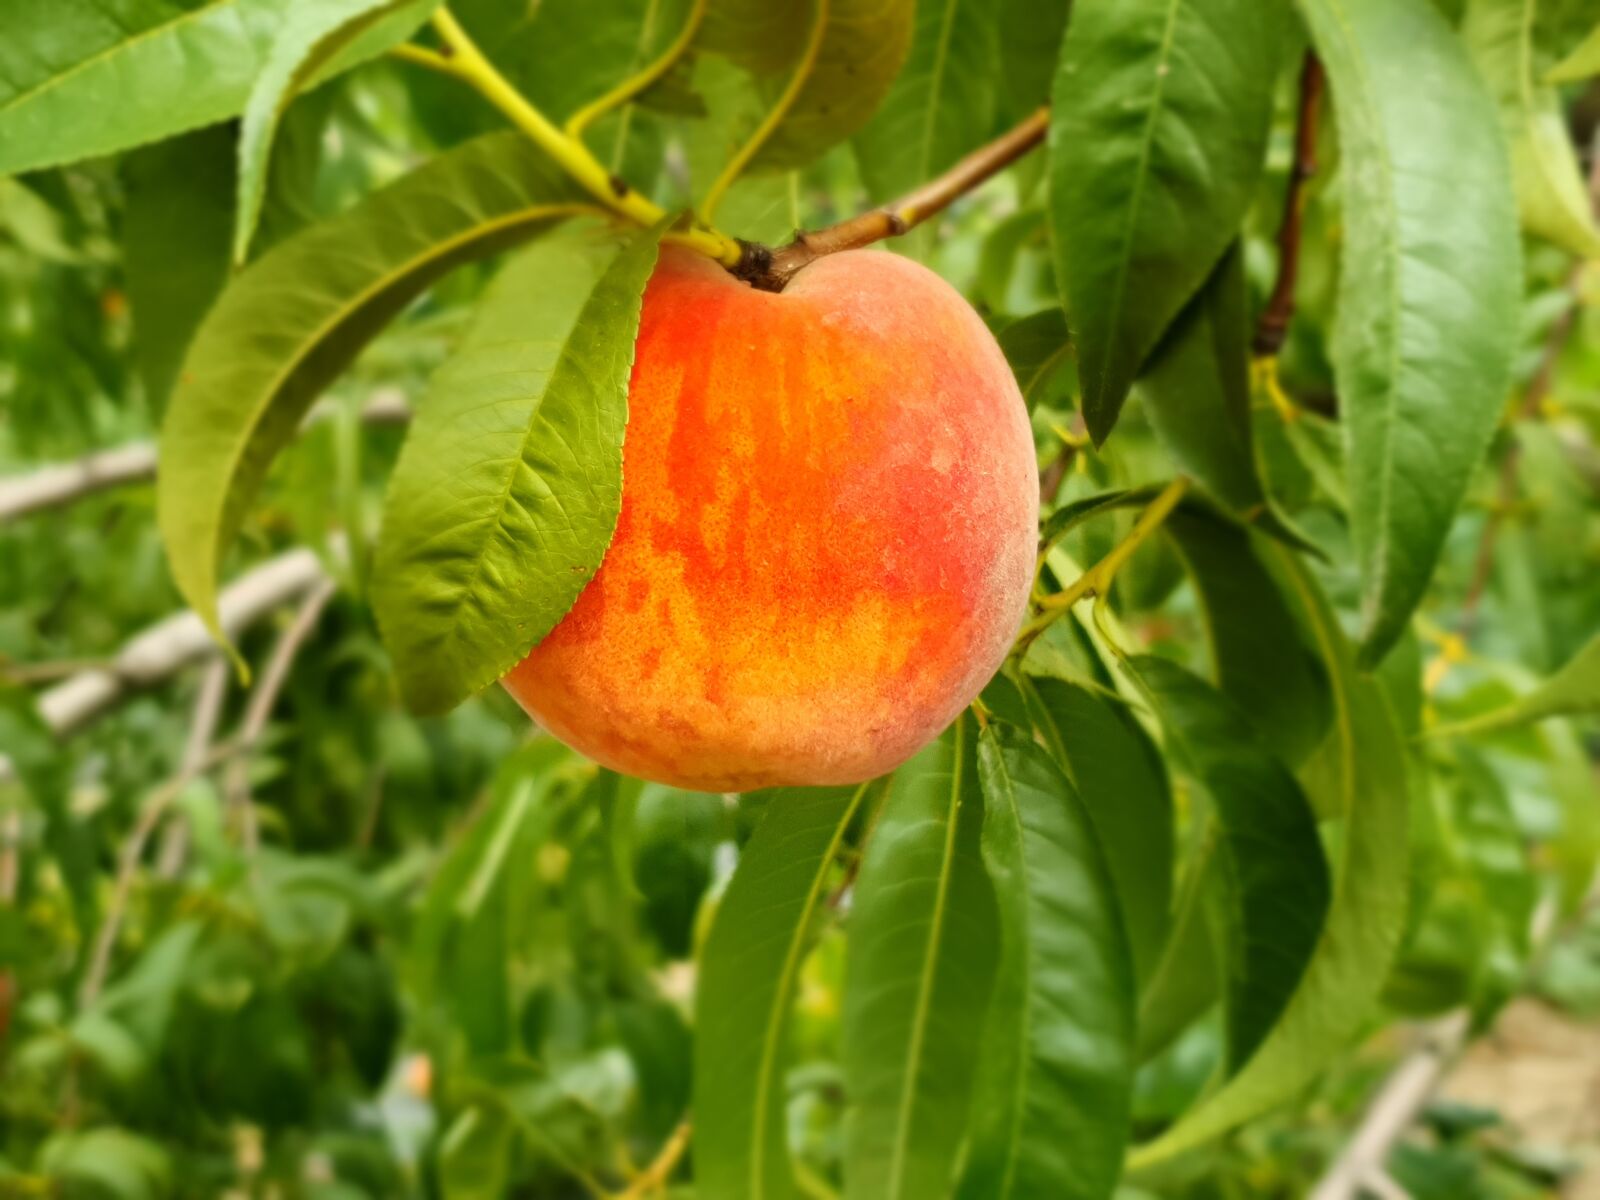 Samsung Galaxy S10e sample photo. Peach, fruit, delicious photography